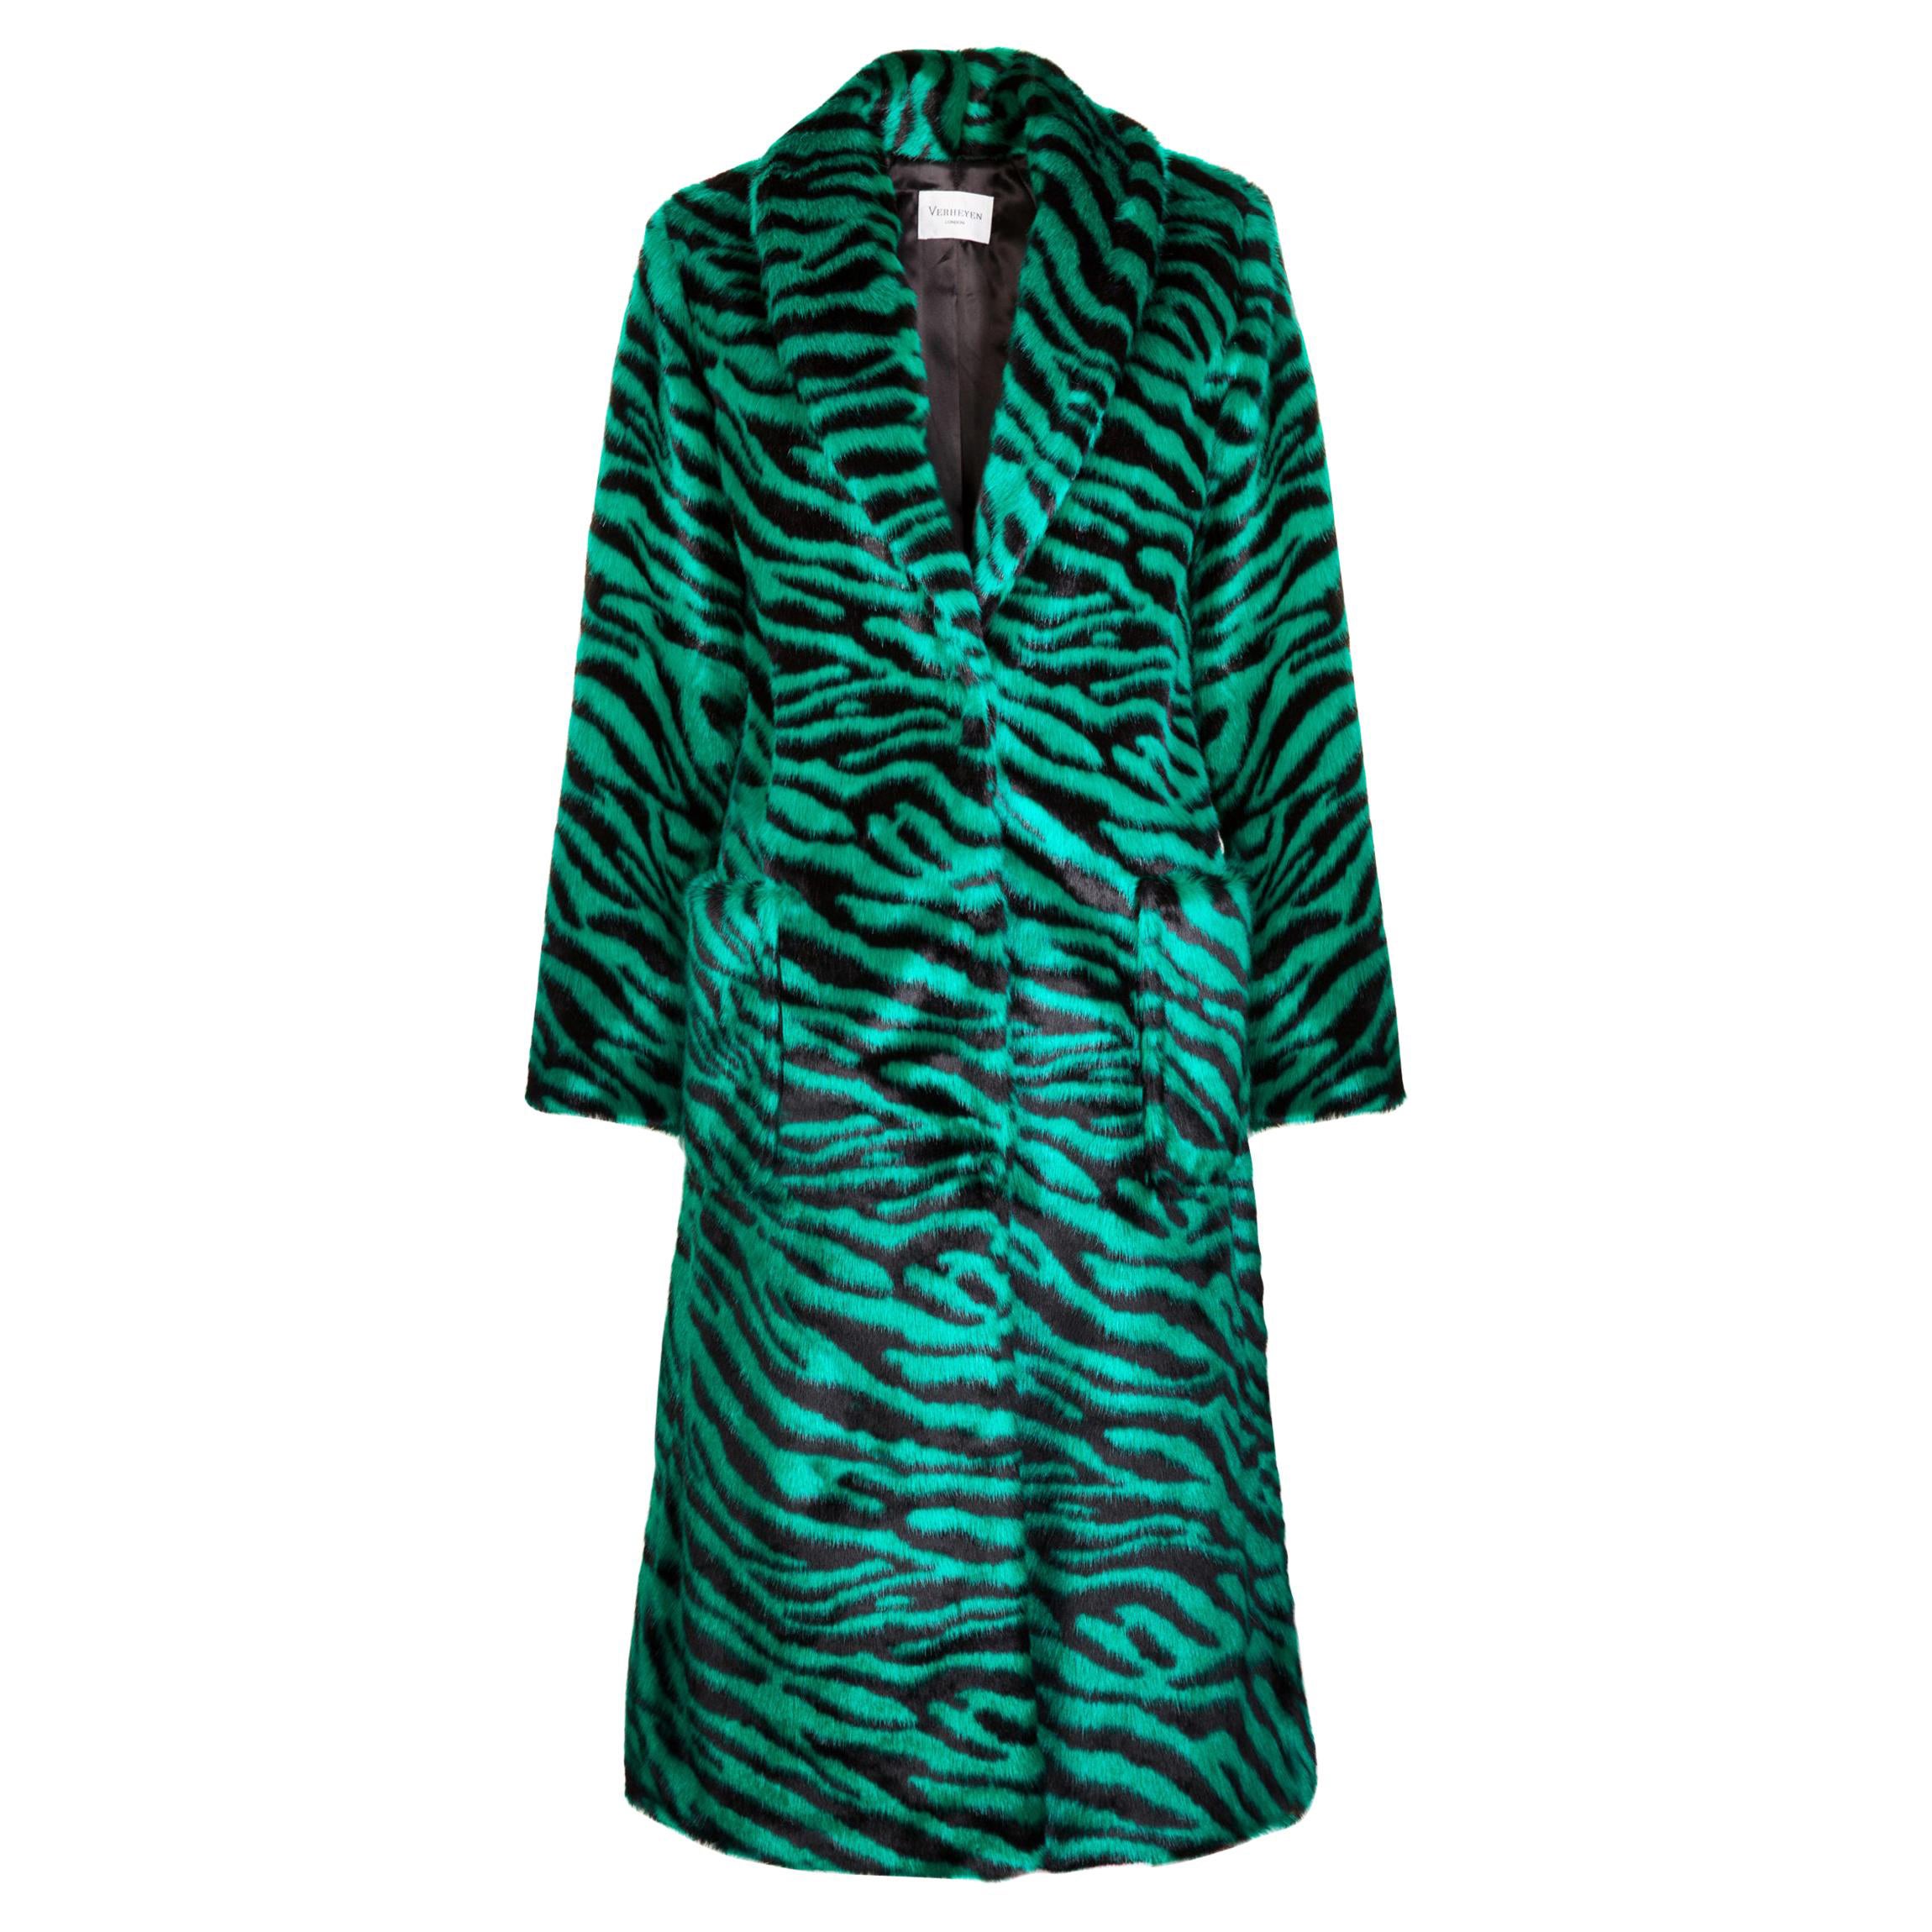 Verheyen London Esmeralda Faux Fur Coat in Emerald Green Zebra Print size uk 10 For Sale